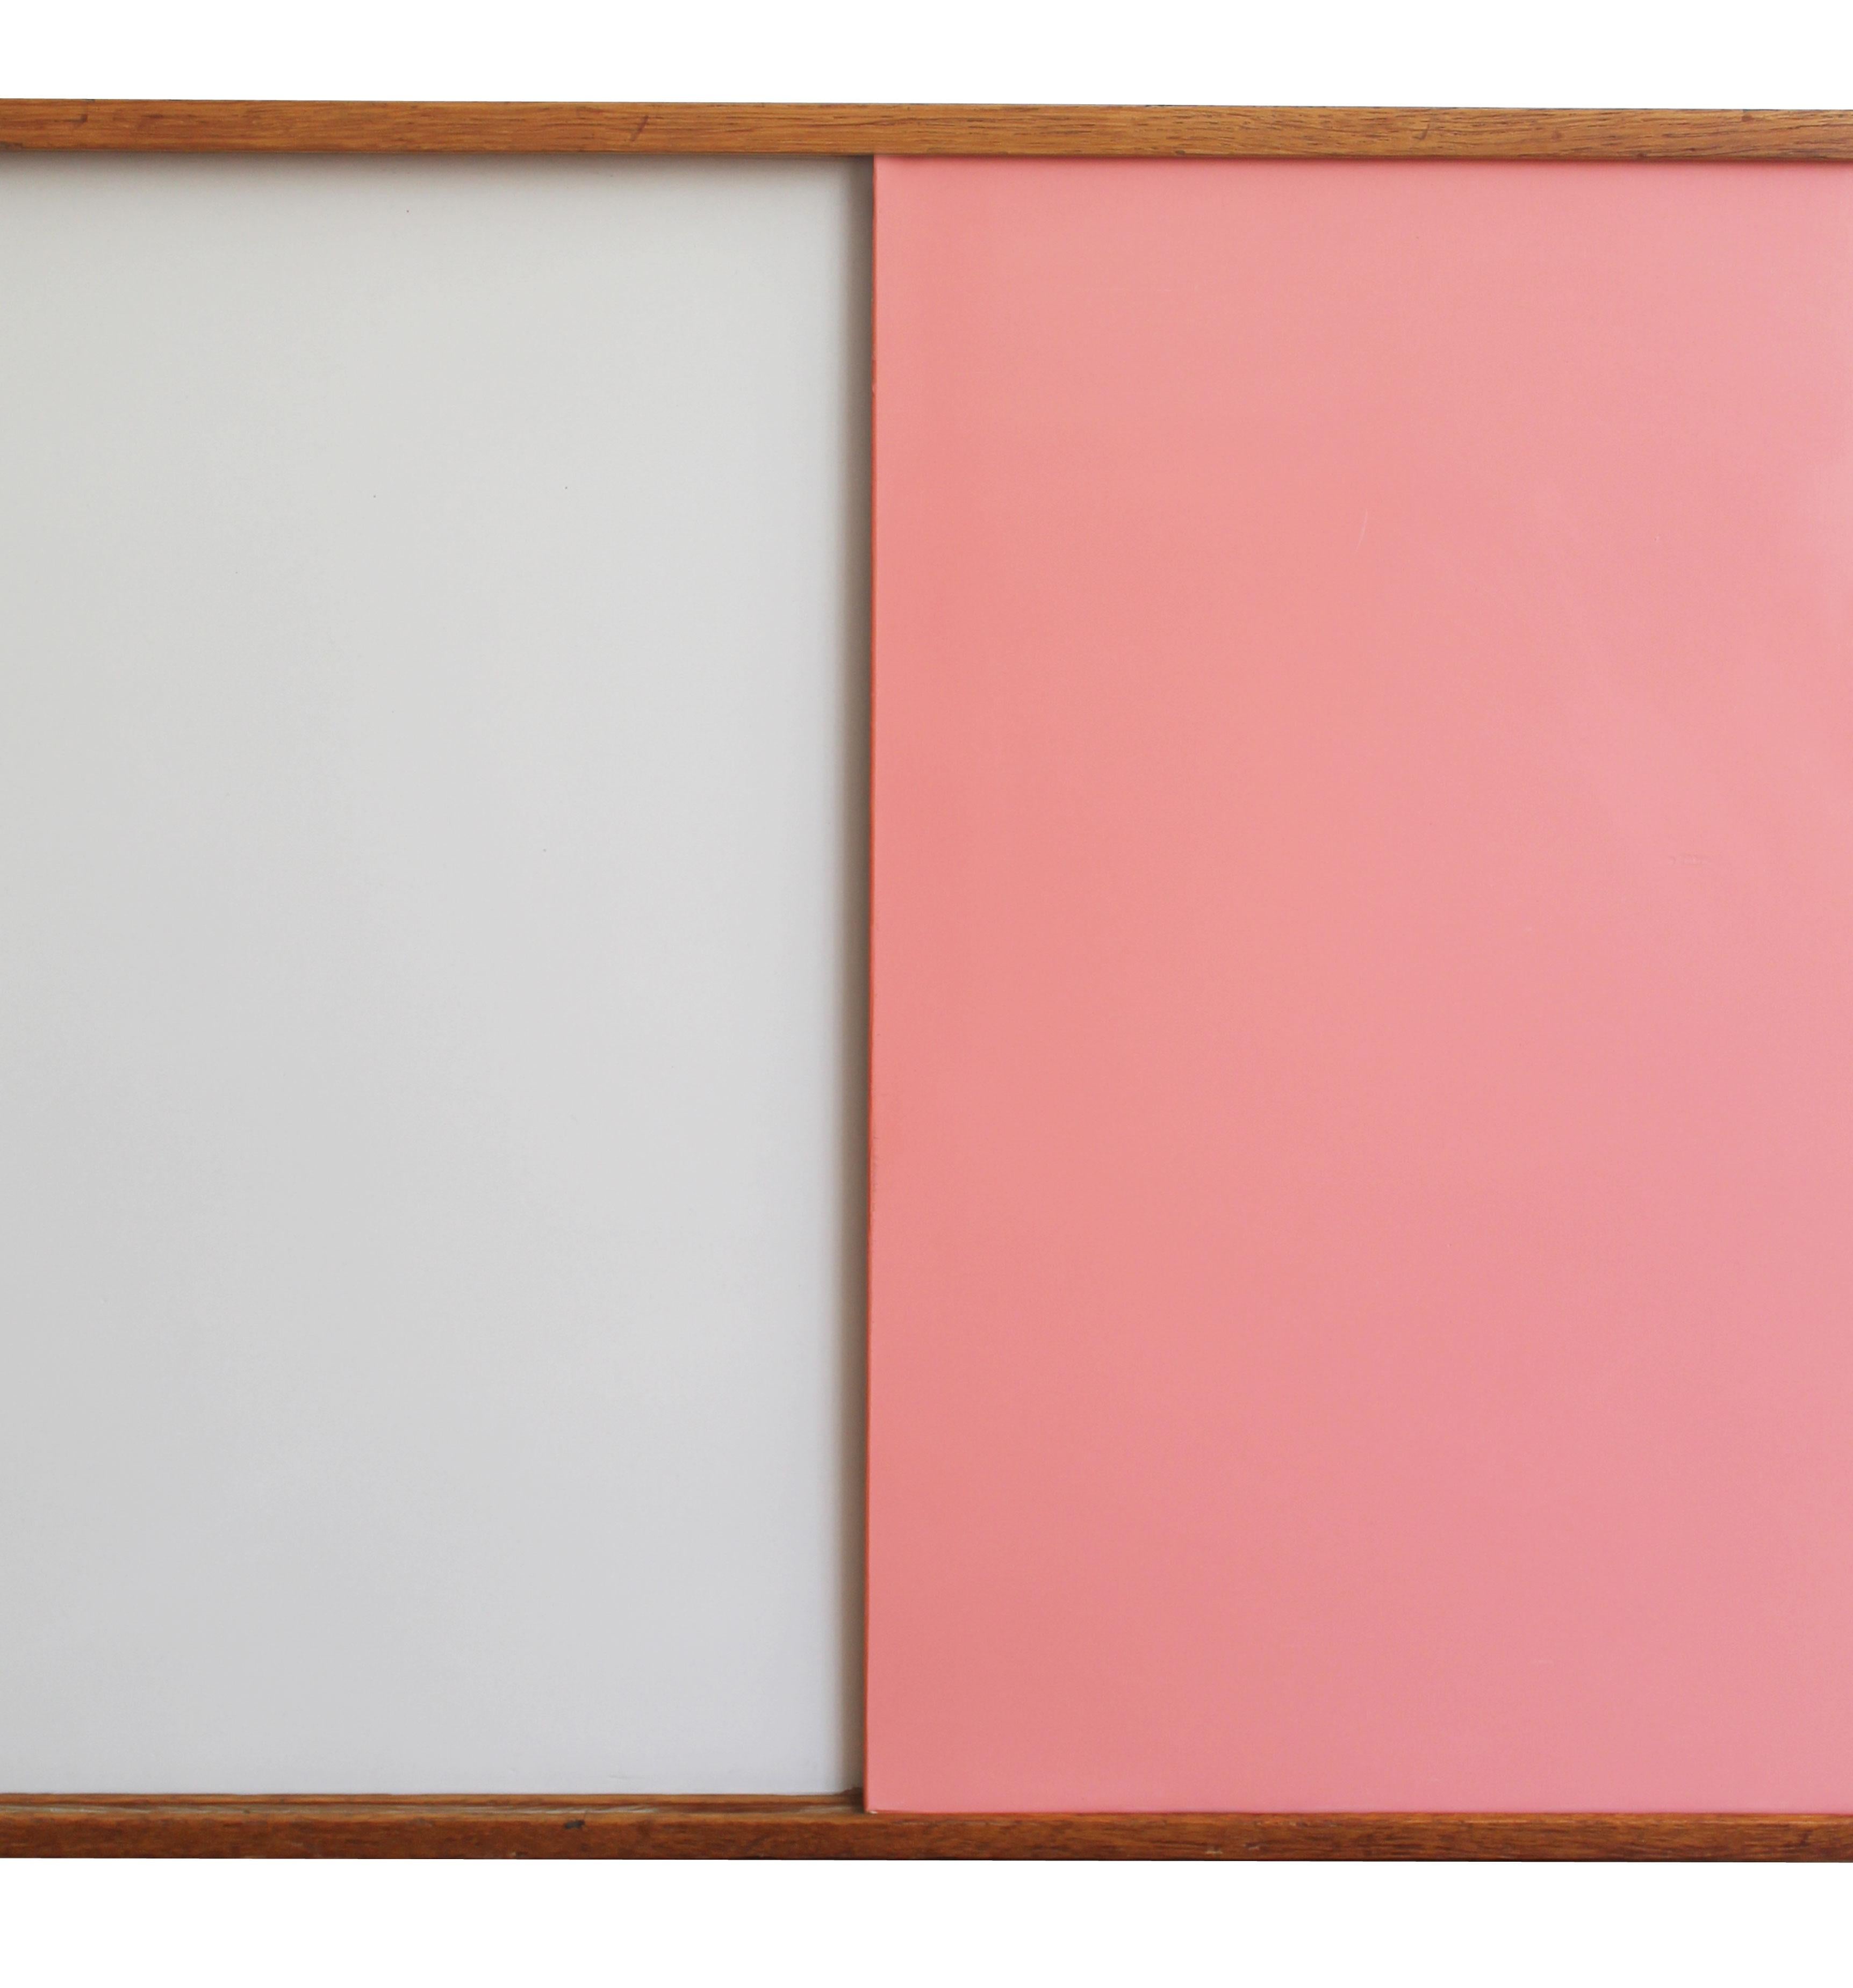 Formica U-452 Pink and White Sideboard by Jiri Jiroutek